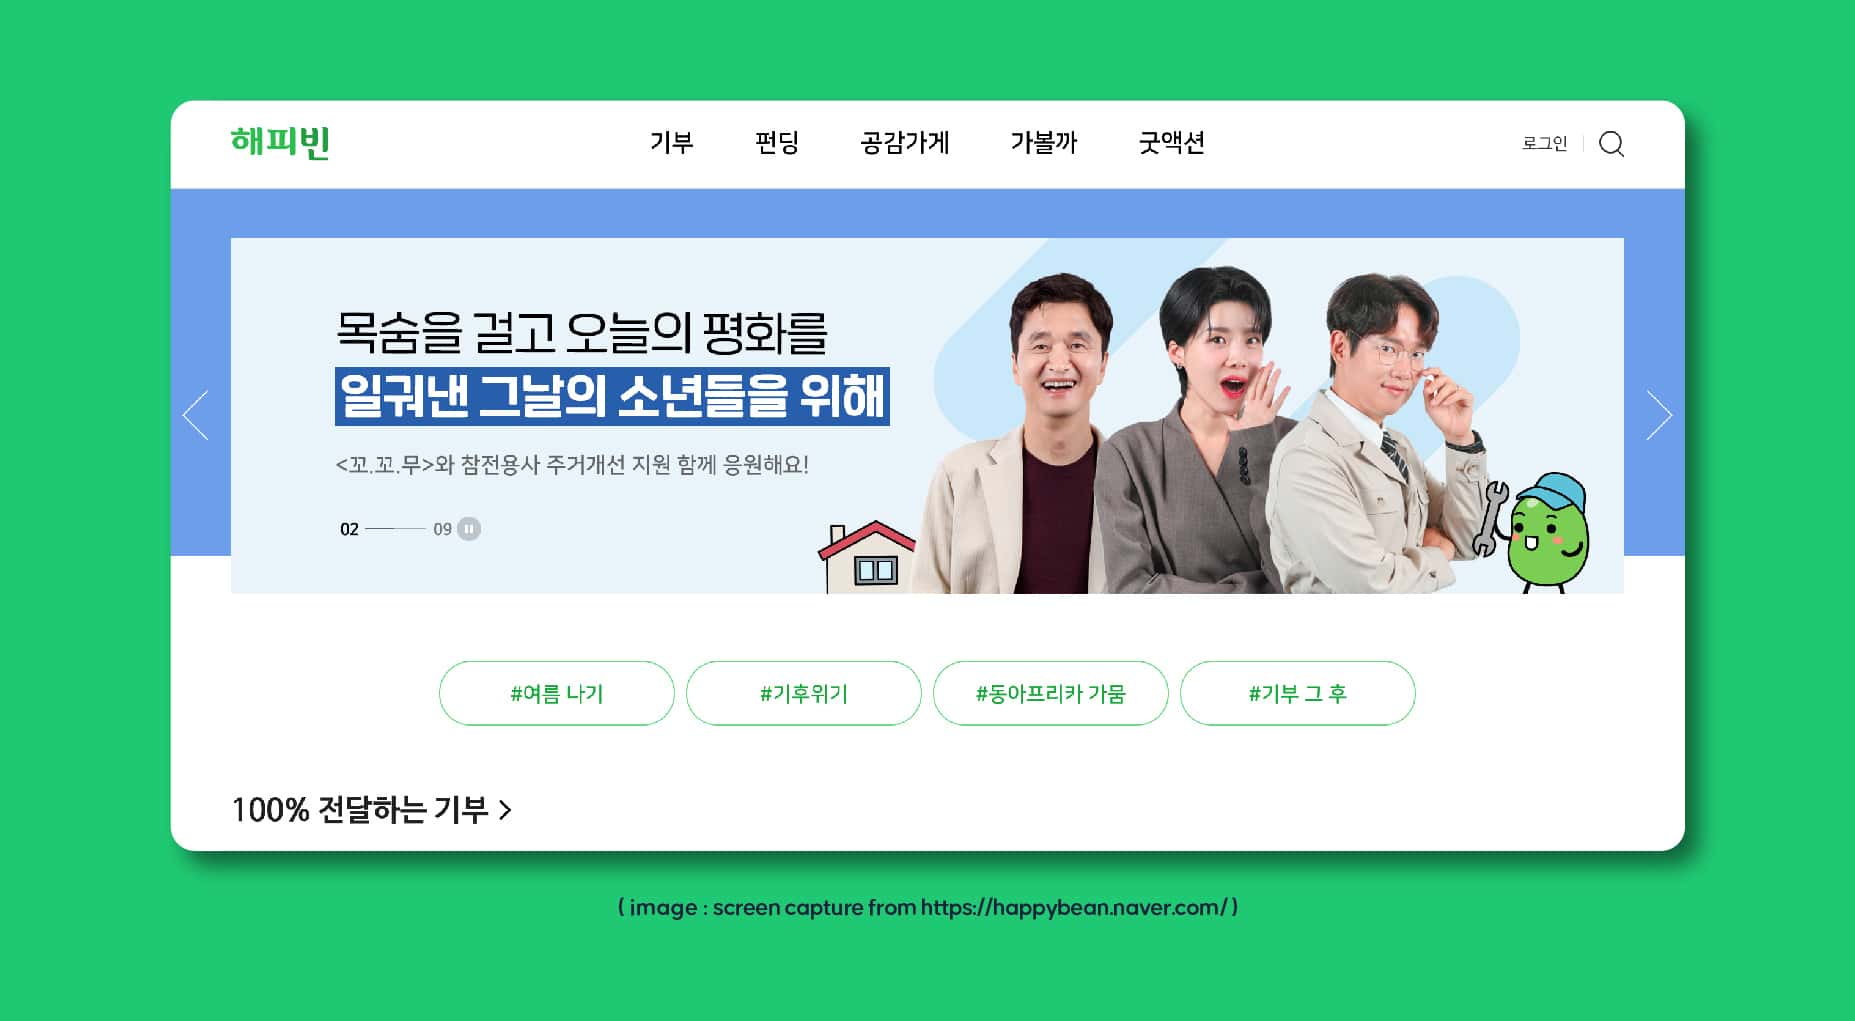 مؤسسة Naver Happybean (네이버 해피 빈) | الاستفسار